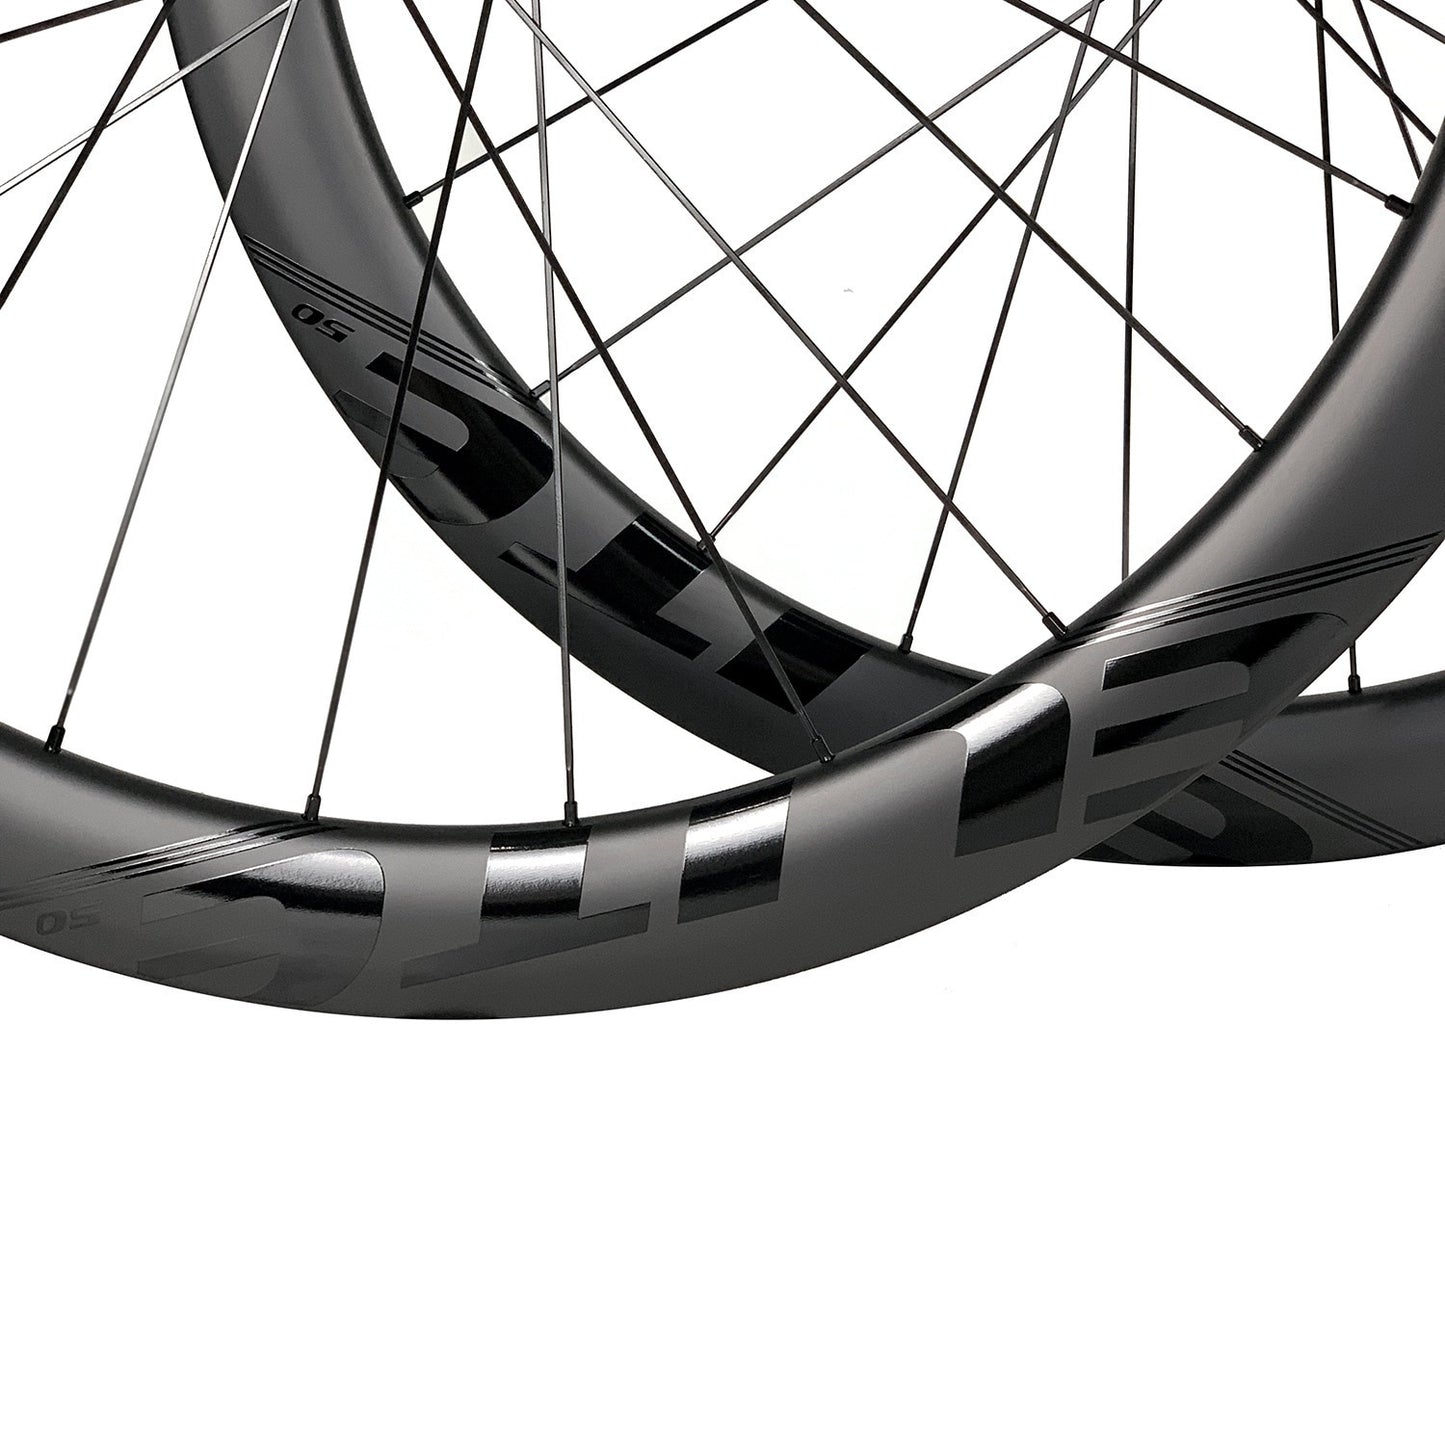 ELITEWHEELS : Roues carbone pour vélo de route 700c avec freins à disque | Jantes carbone de qualité ENT UCI | Center Lock ou 6-boulons | Roues haut de gamme pour le cyclisme sur route